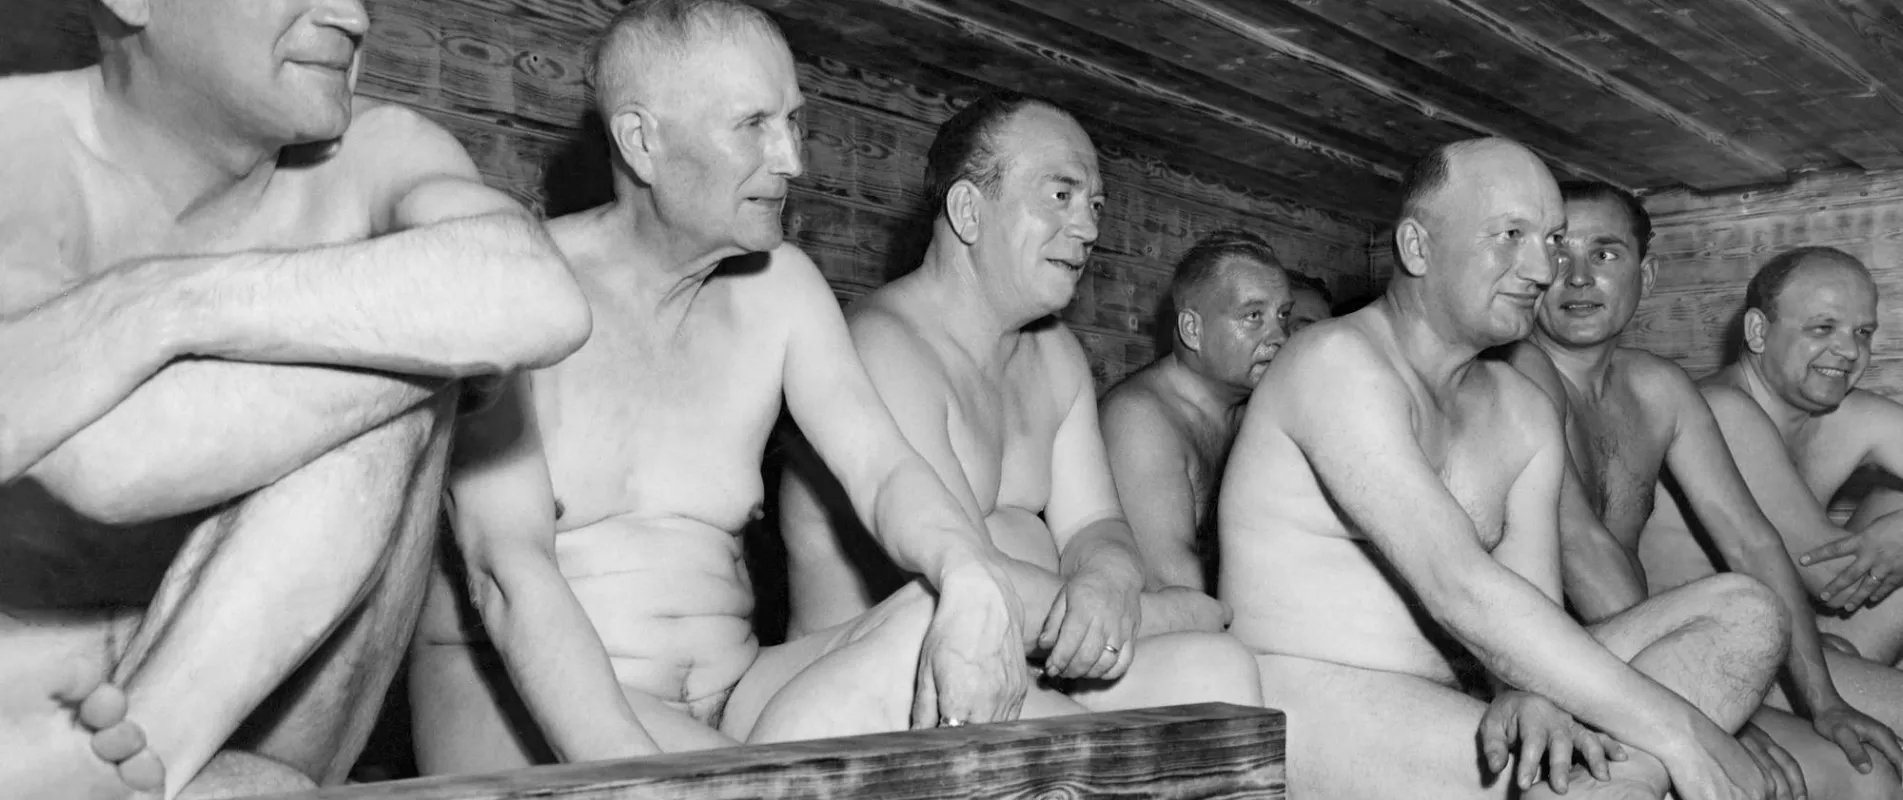 Tutustu 32+ imagen kekkonen sauna